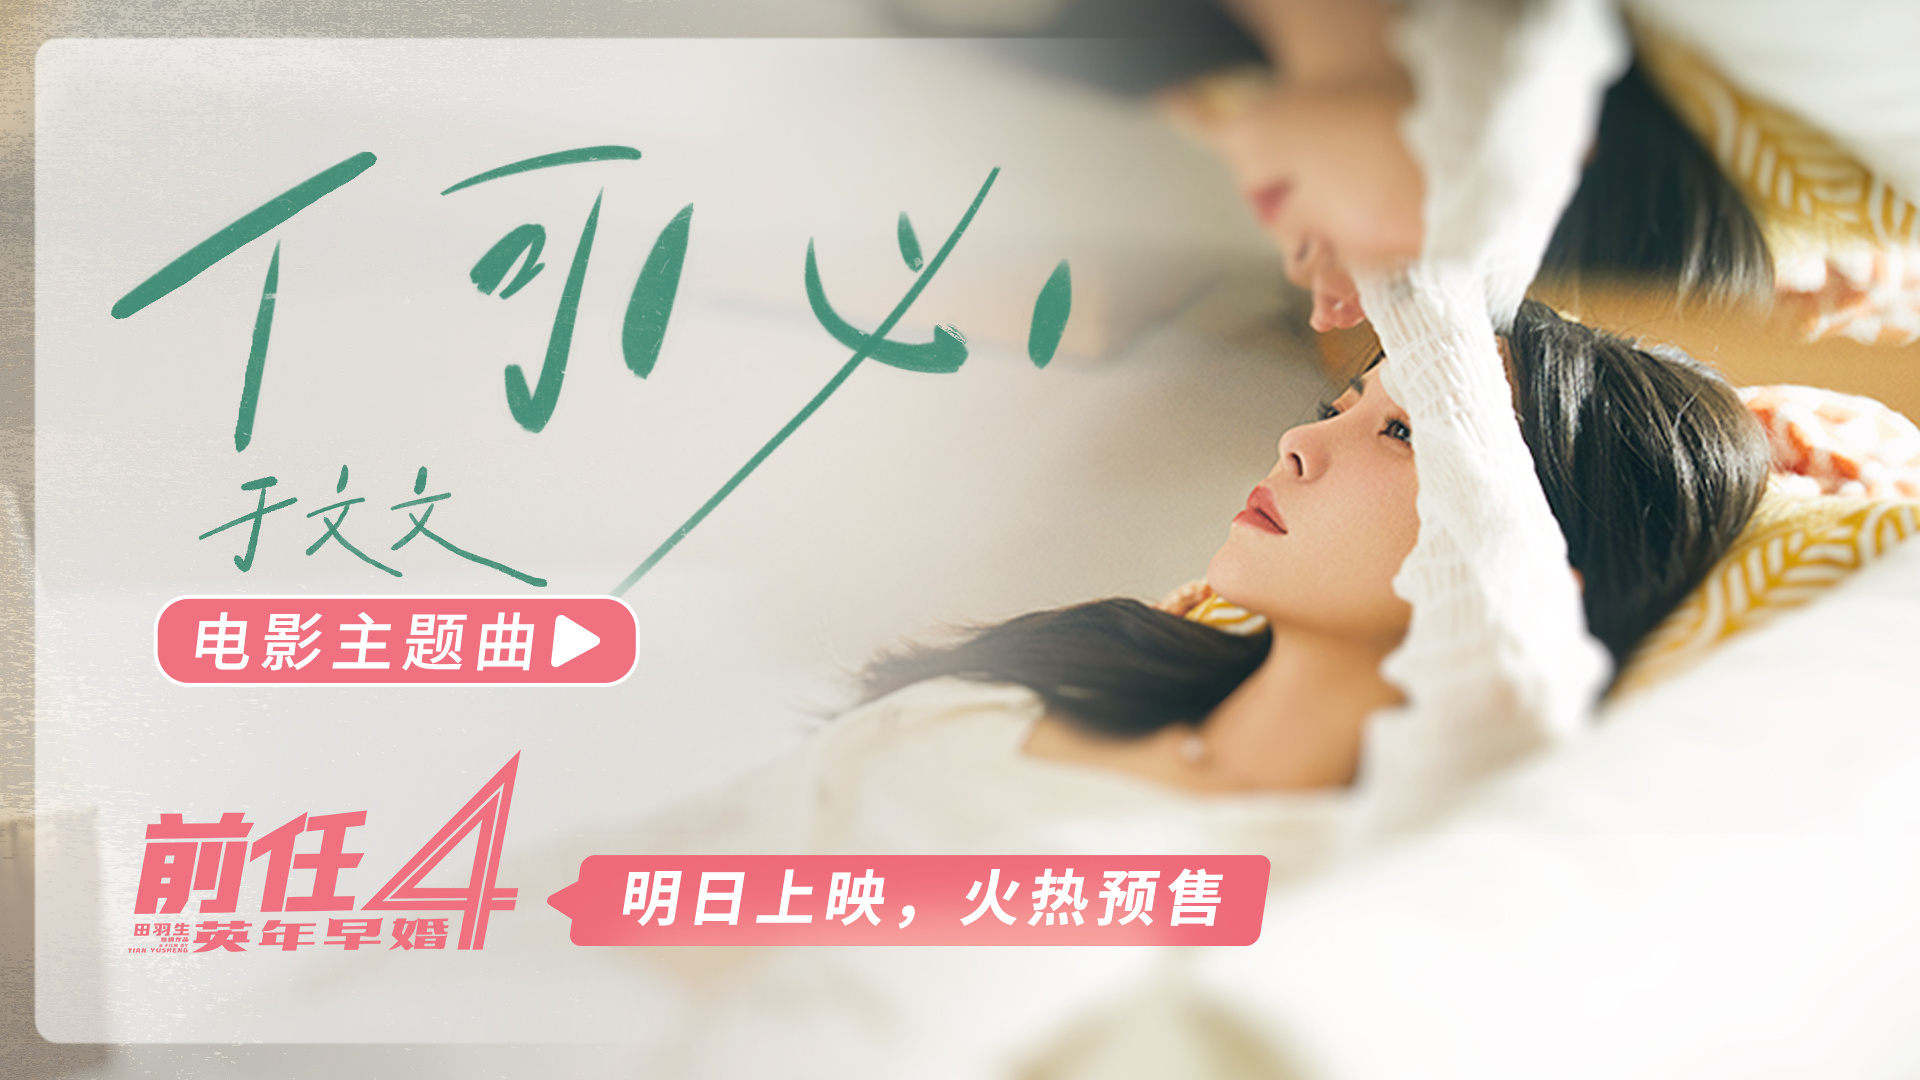 《前任4》曝主题曲《何必》MV 于文文唐恬再合作